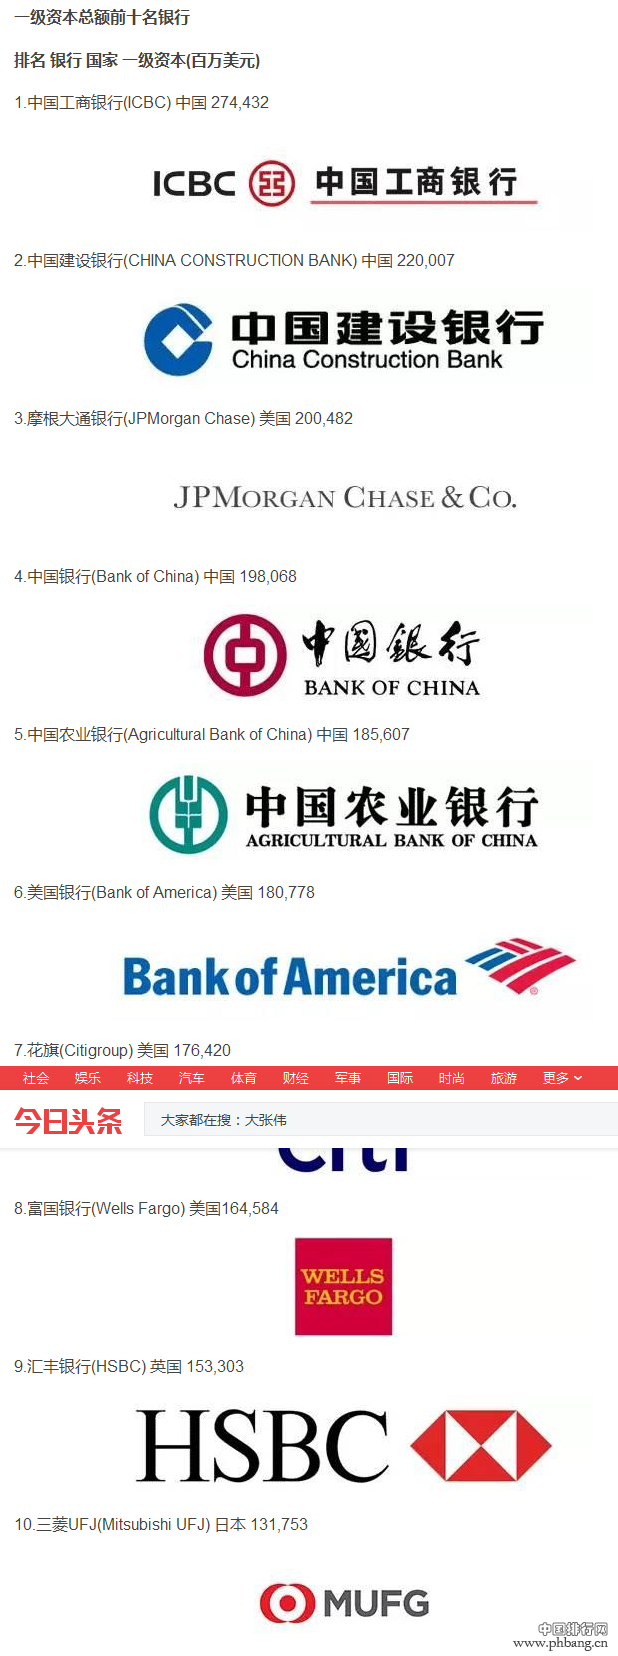 2016年全球十大银行排行